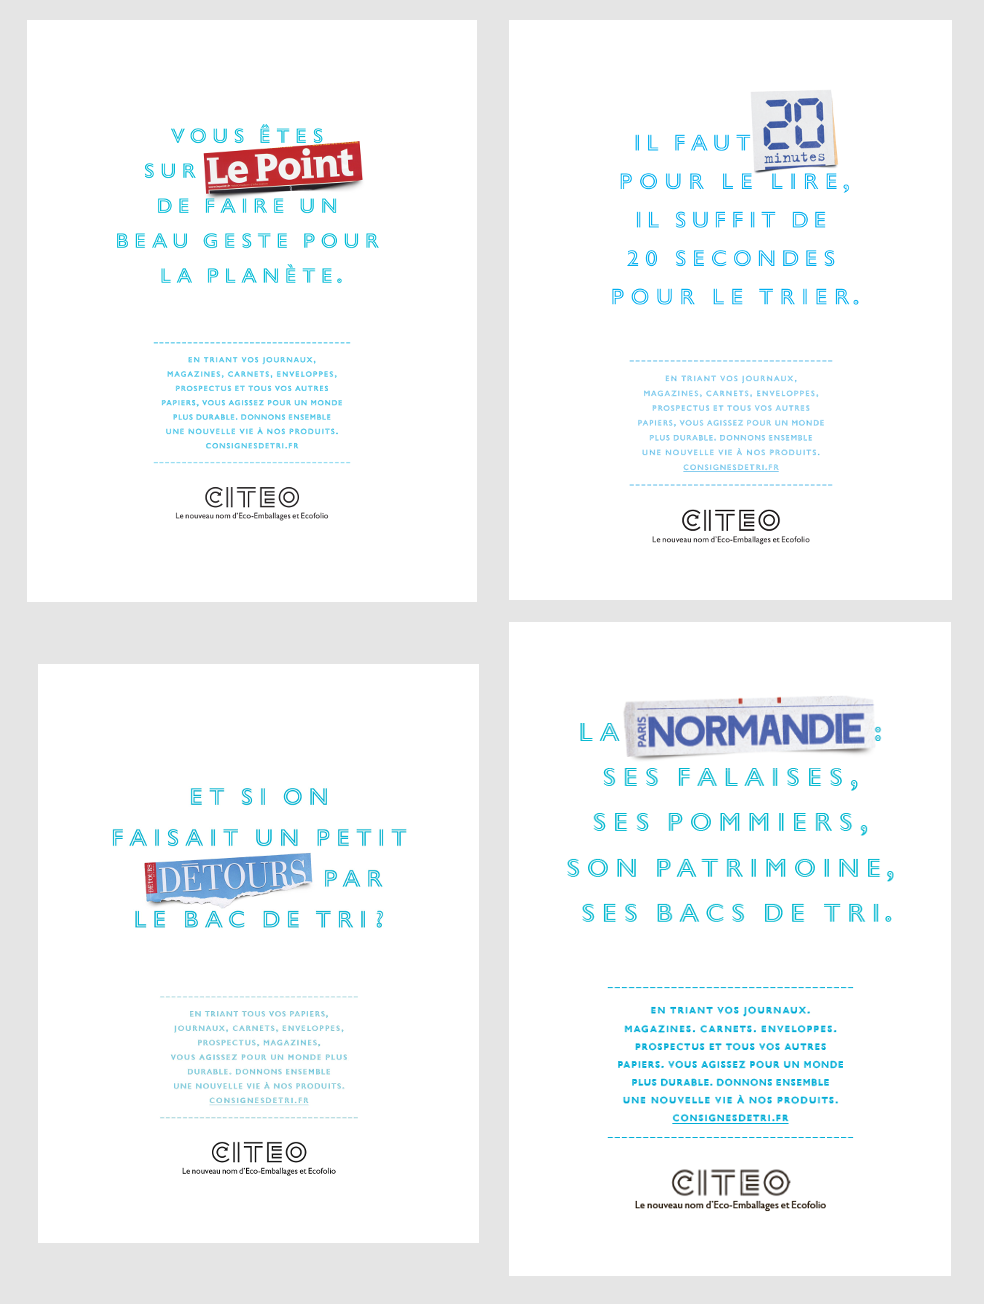 Publicités conçues par Citeo et les éditeurs de presse pour sensibiliser au tri des papiers